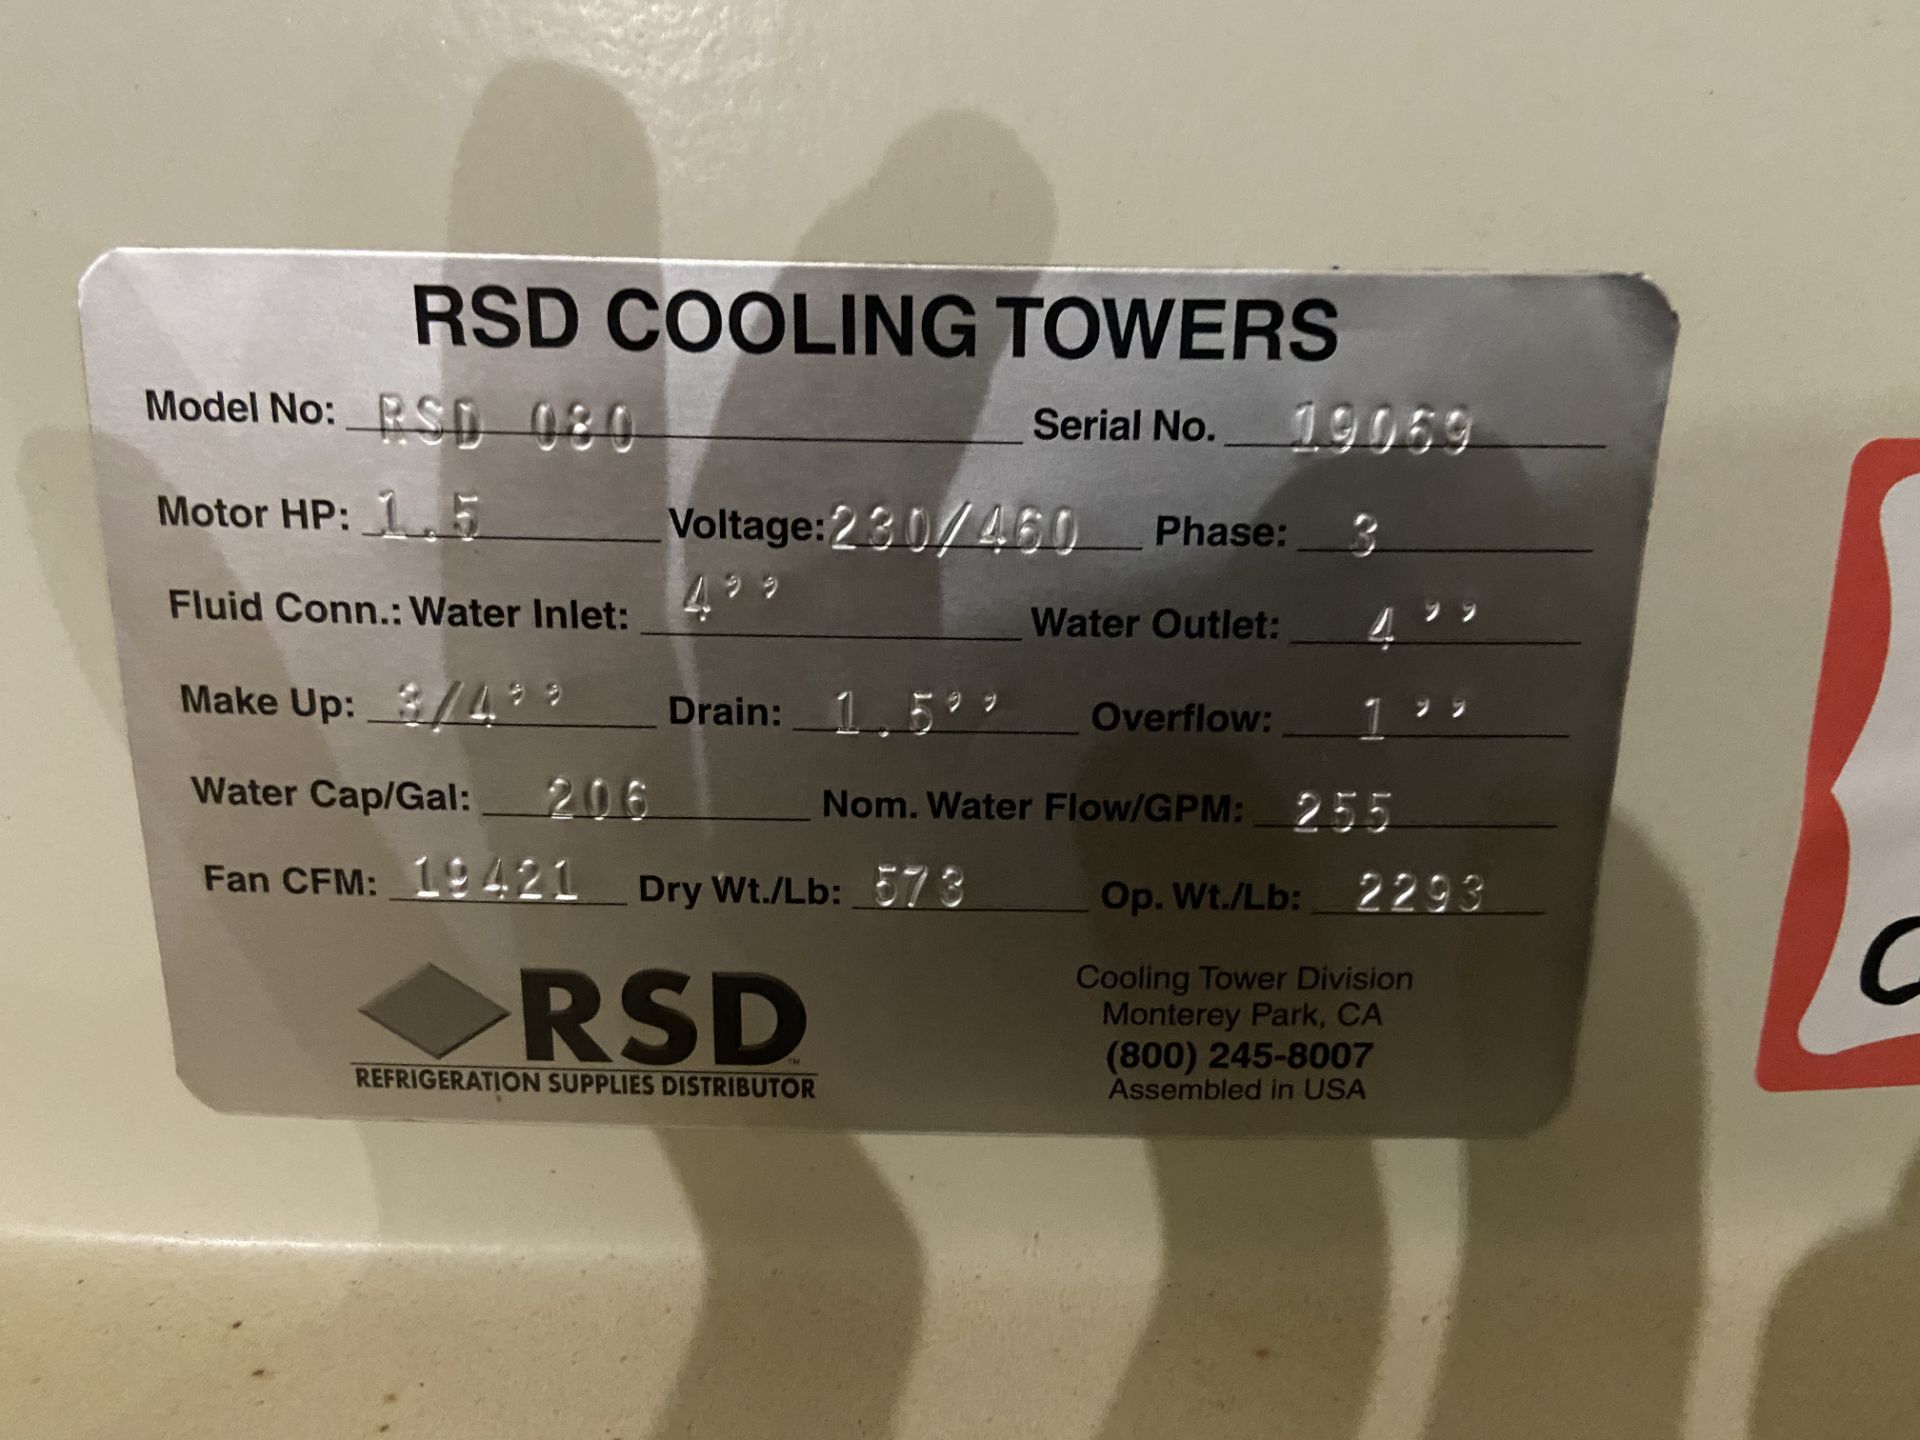 NEW RSD Fiberglass Cooling Tower, Model# RSD080, Serial# 19069, 1.5 HP, 230/460V, 3 Phase, Rigging/ - Image 3 of 3